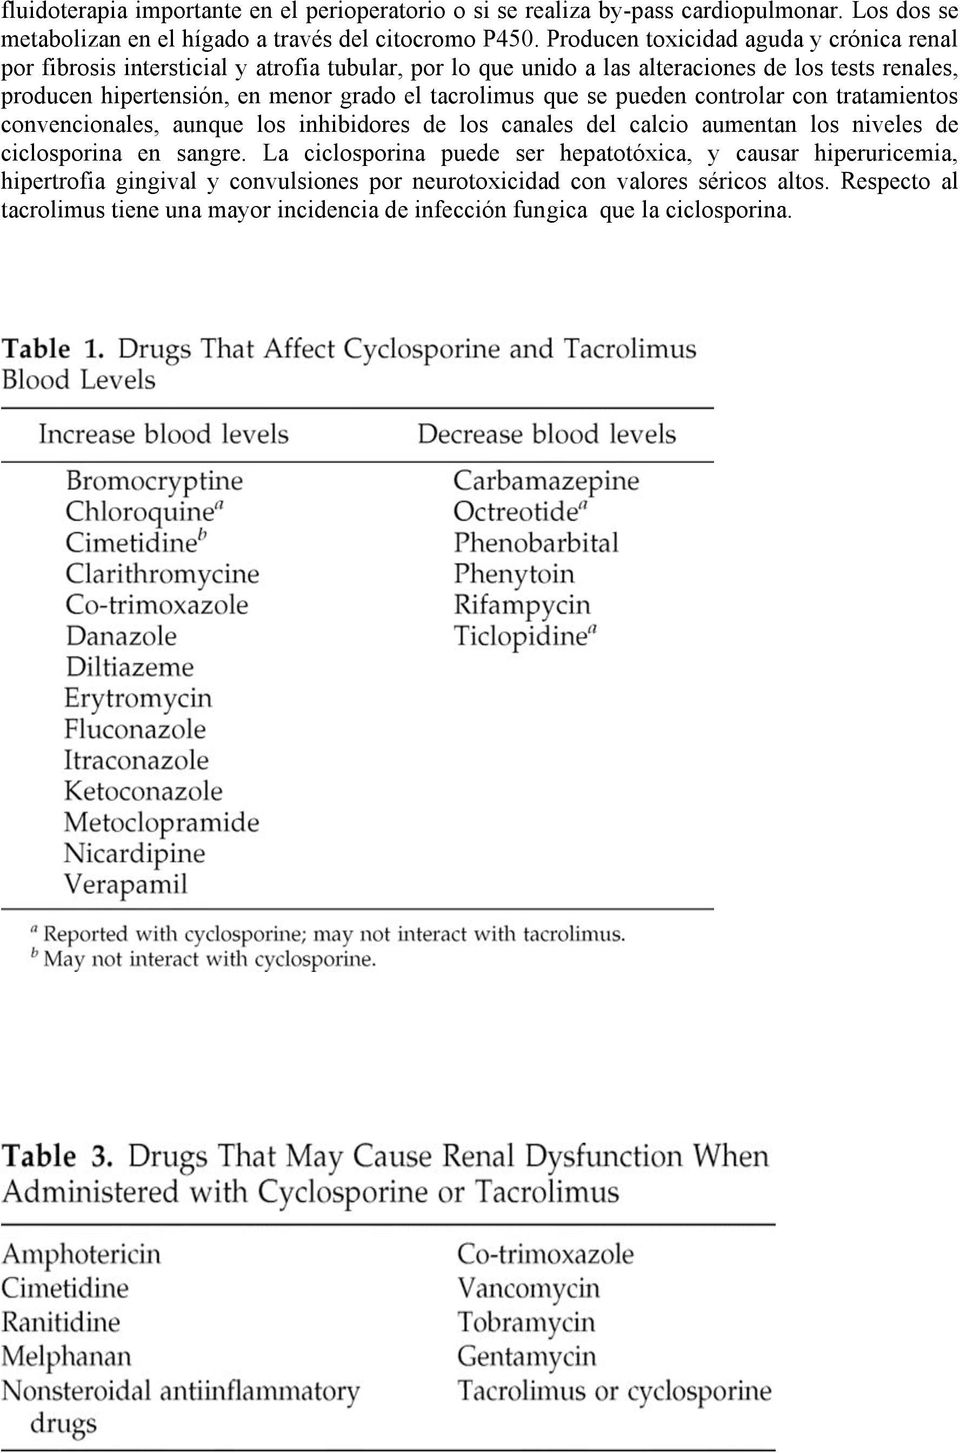 tacrolimus que se pueden controlar con tratamientos convencionales, aunque los inhibidores de los canales del calcio aumentan los niveles de ciclosporina en sangre.